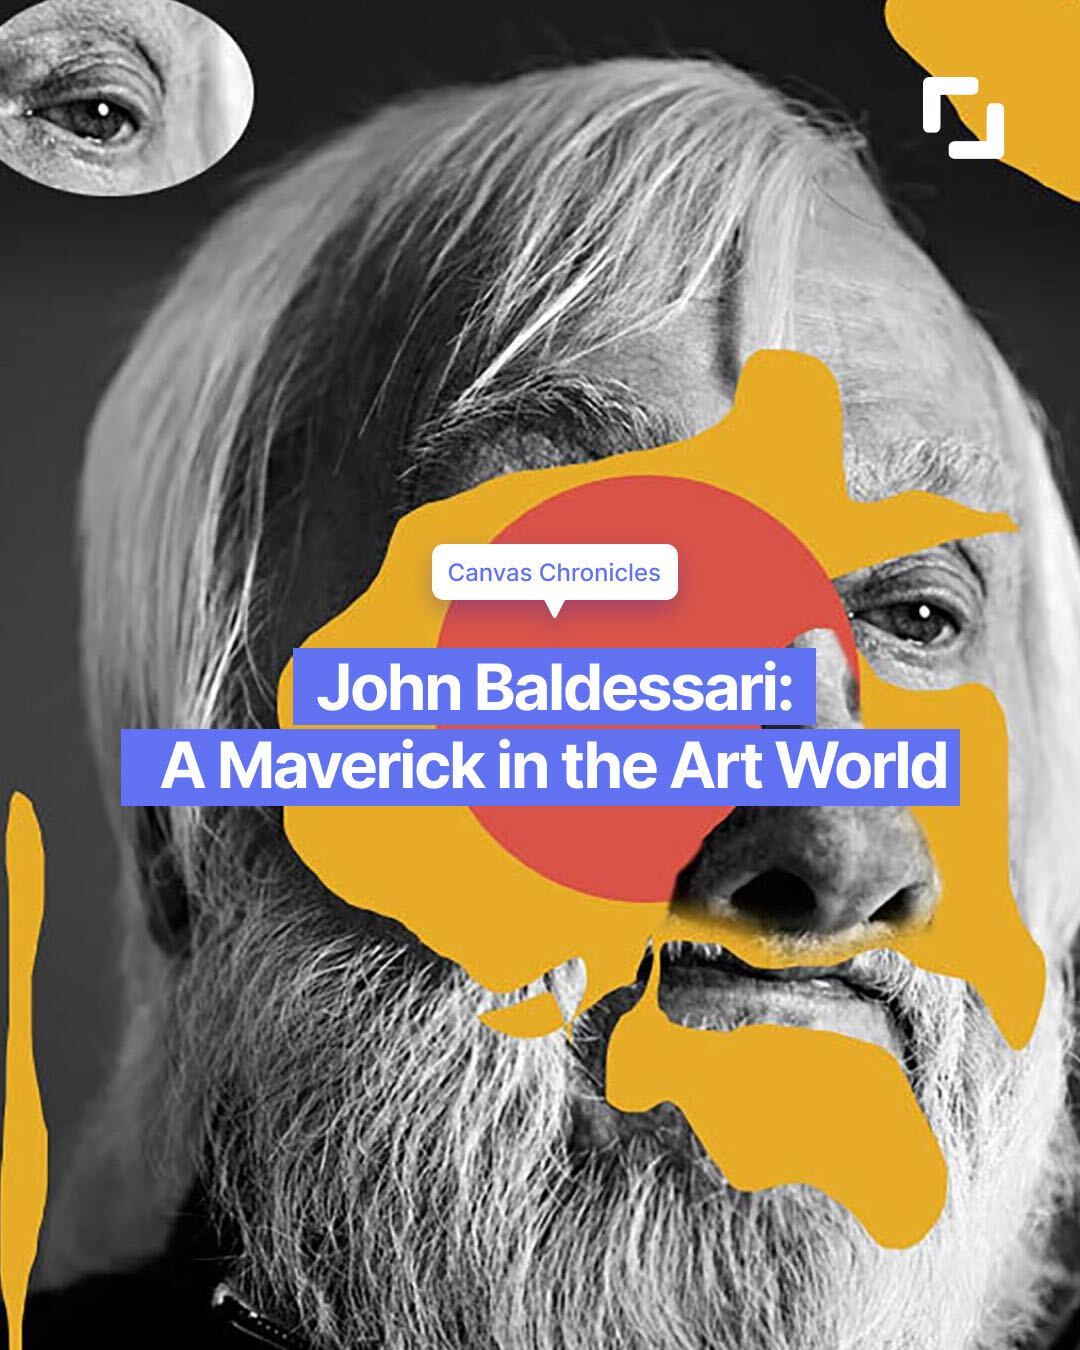 John Baldessari: A Maverick in the Art World